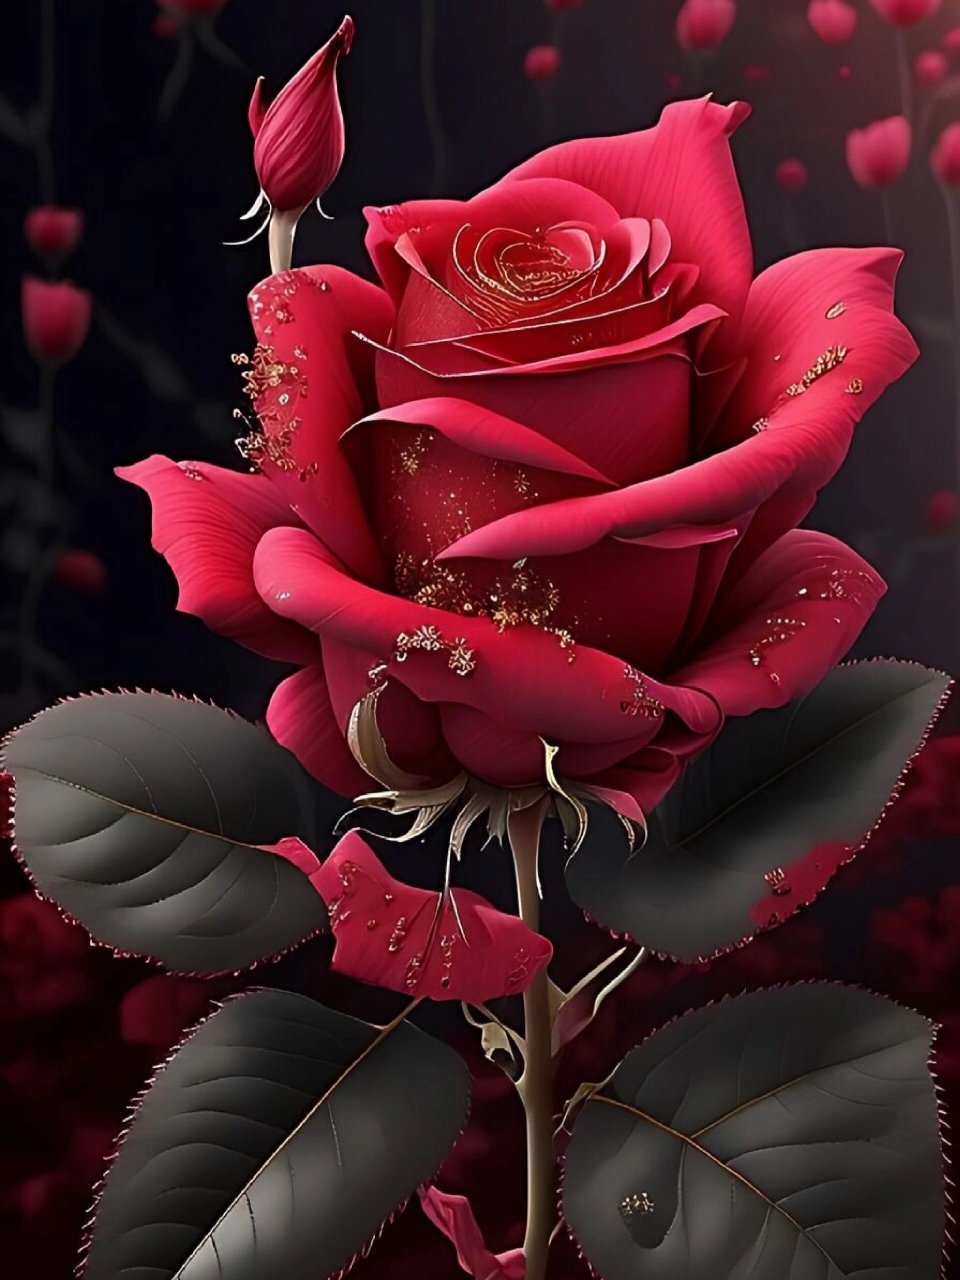 玫瑰花 个性手机壁纸图片